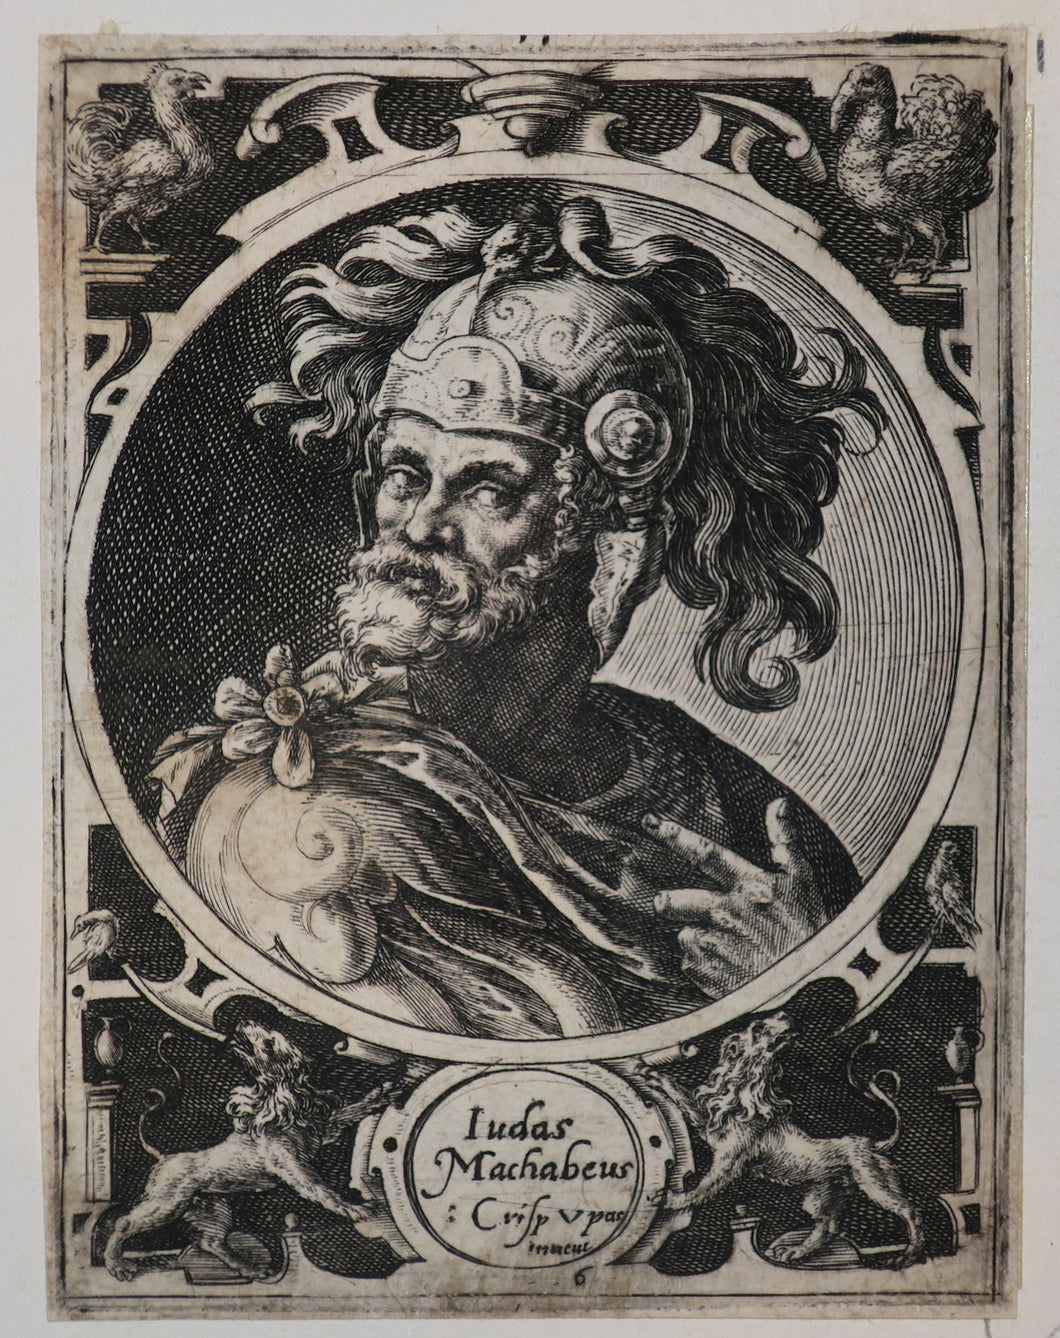 Judas Machabeus en médaillon (Judas Maccabeus).  1590-1610.